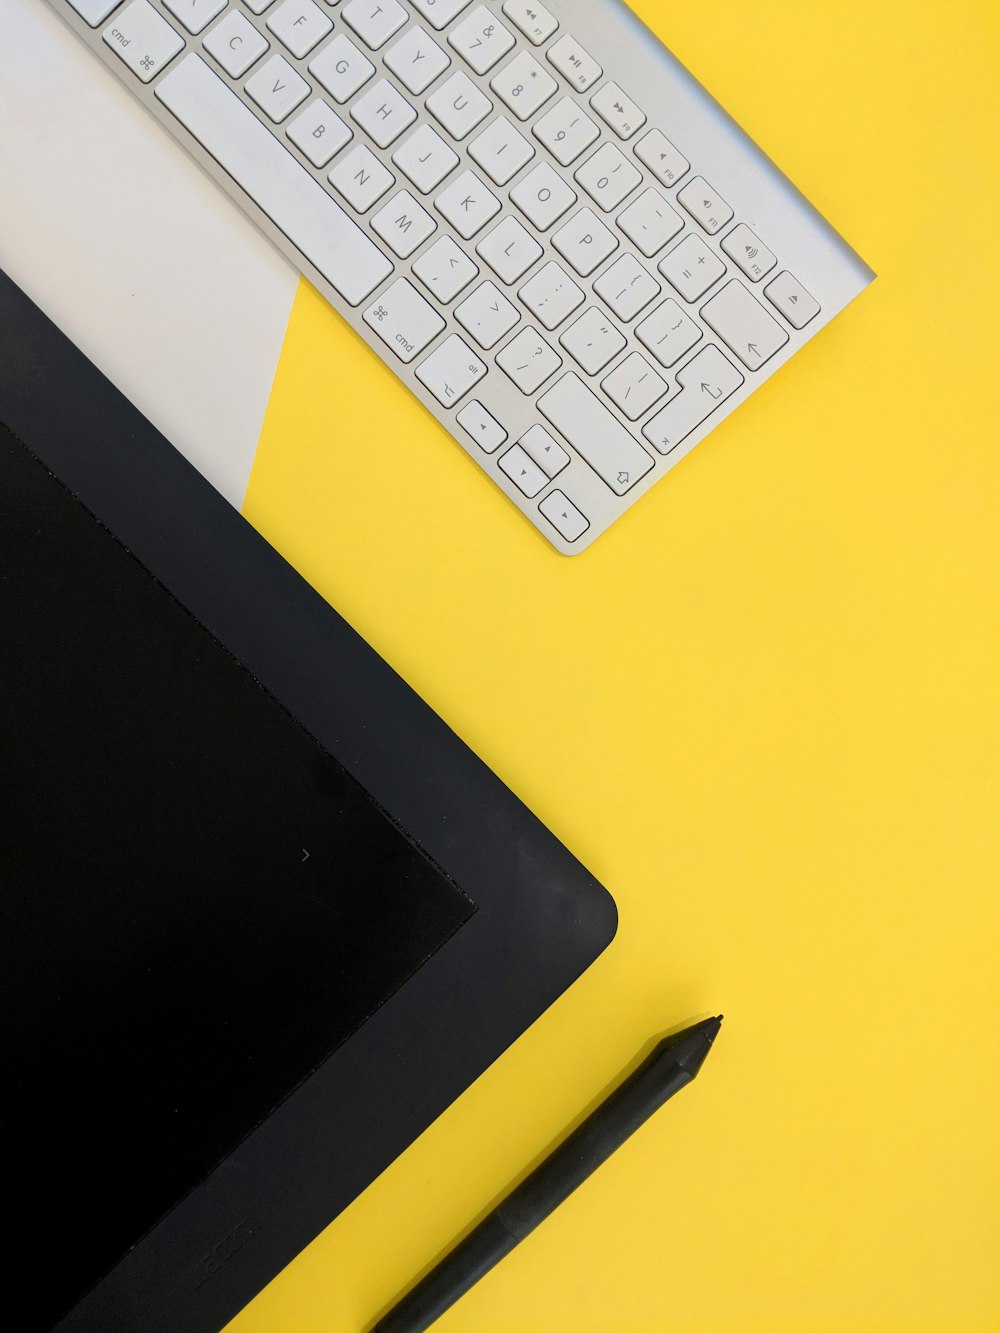 tastiera wireless Apple grigia accanto al tablet nero e alla penna stilo